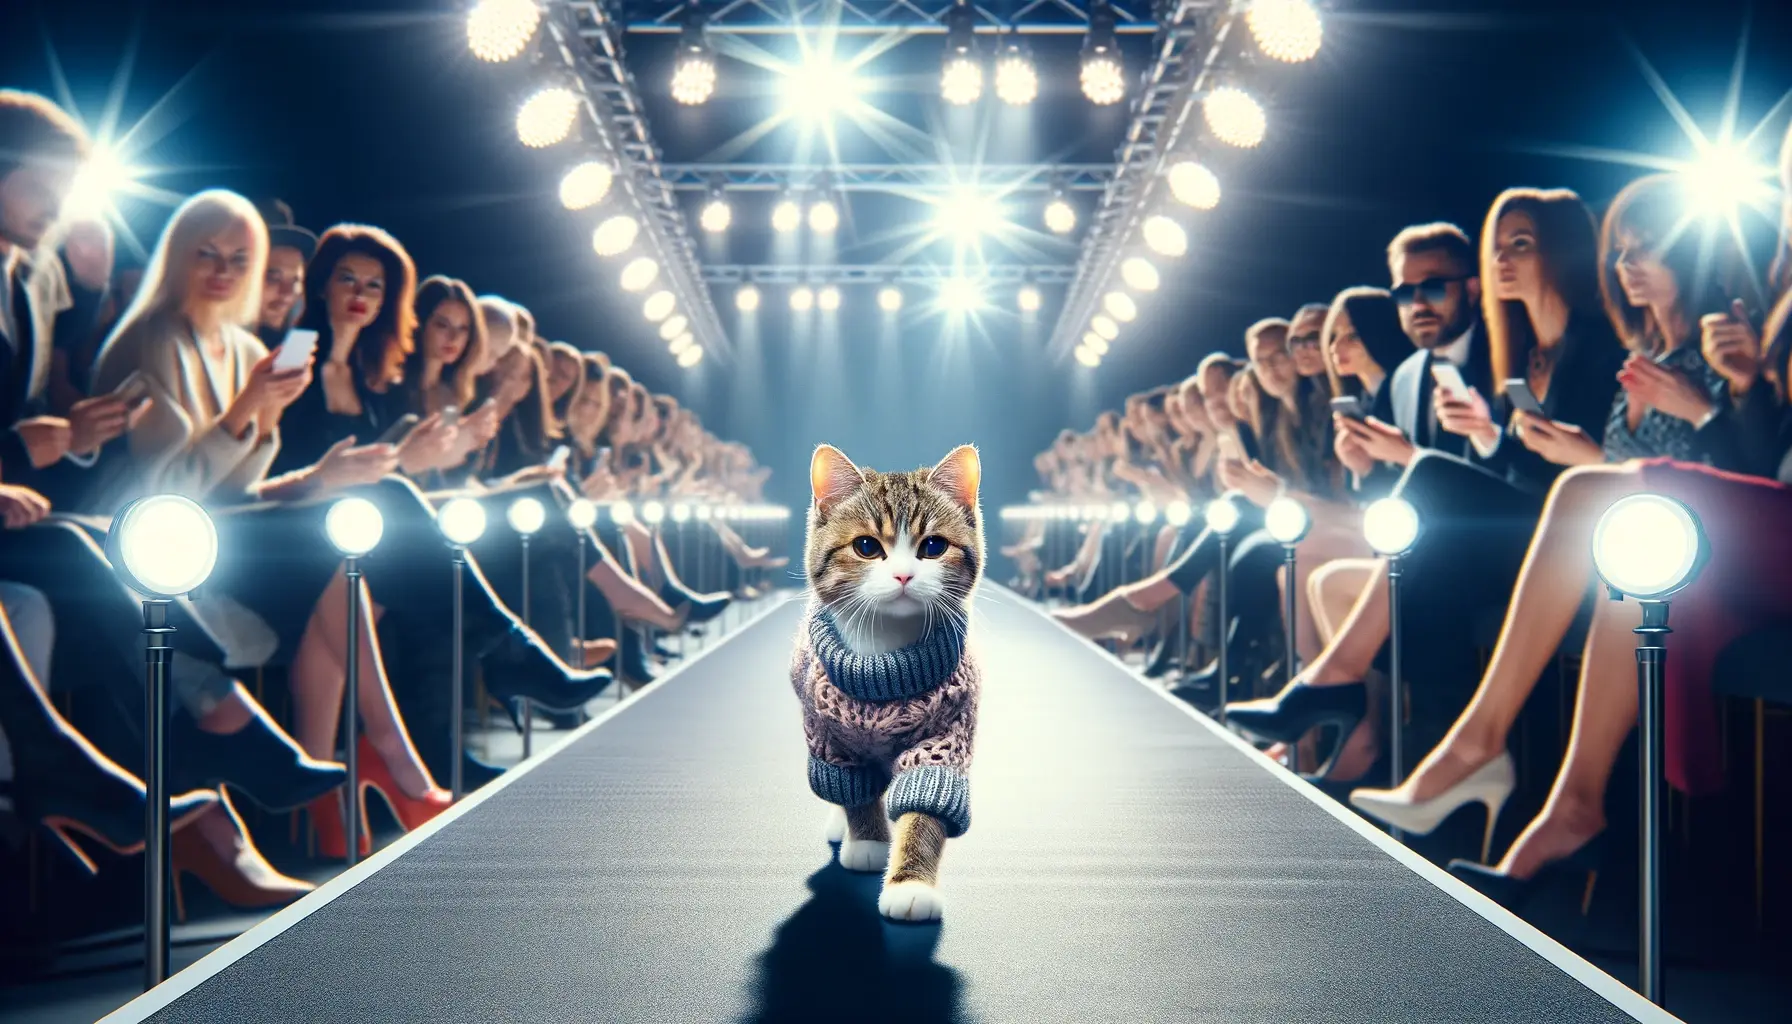 プロンプトは「ファッションショーのモデルとして歩く猫の写真を生成してください」by DALL-E